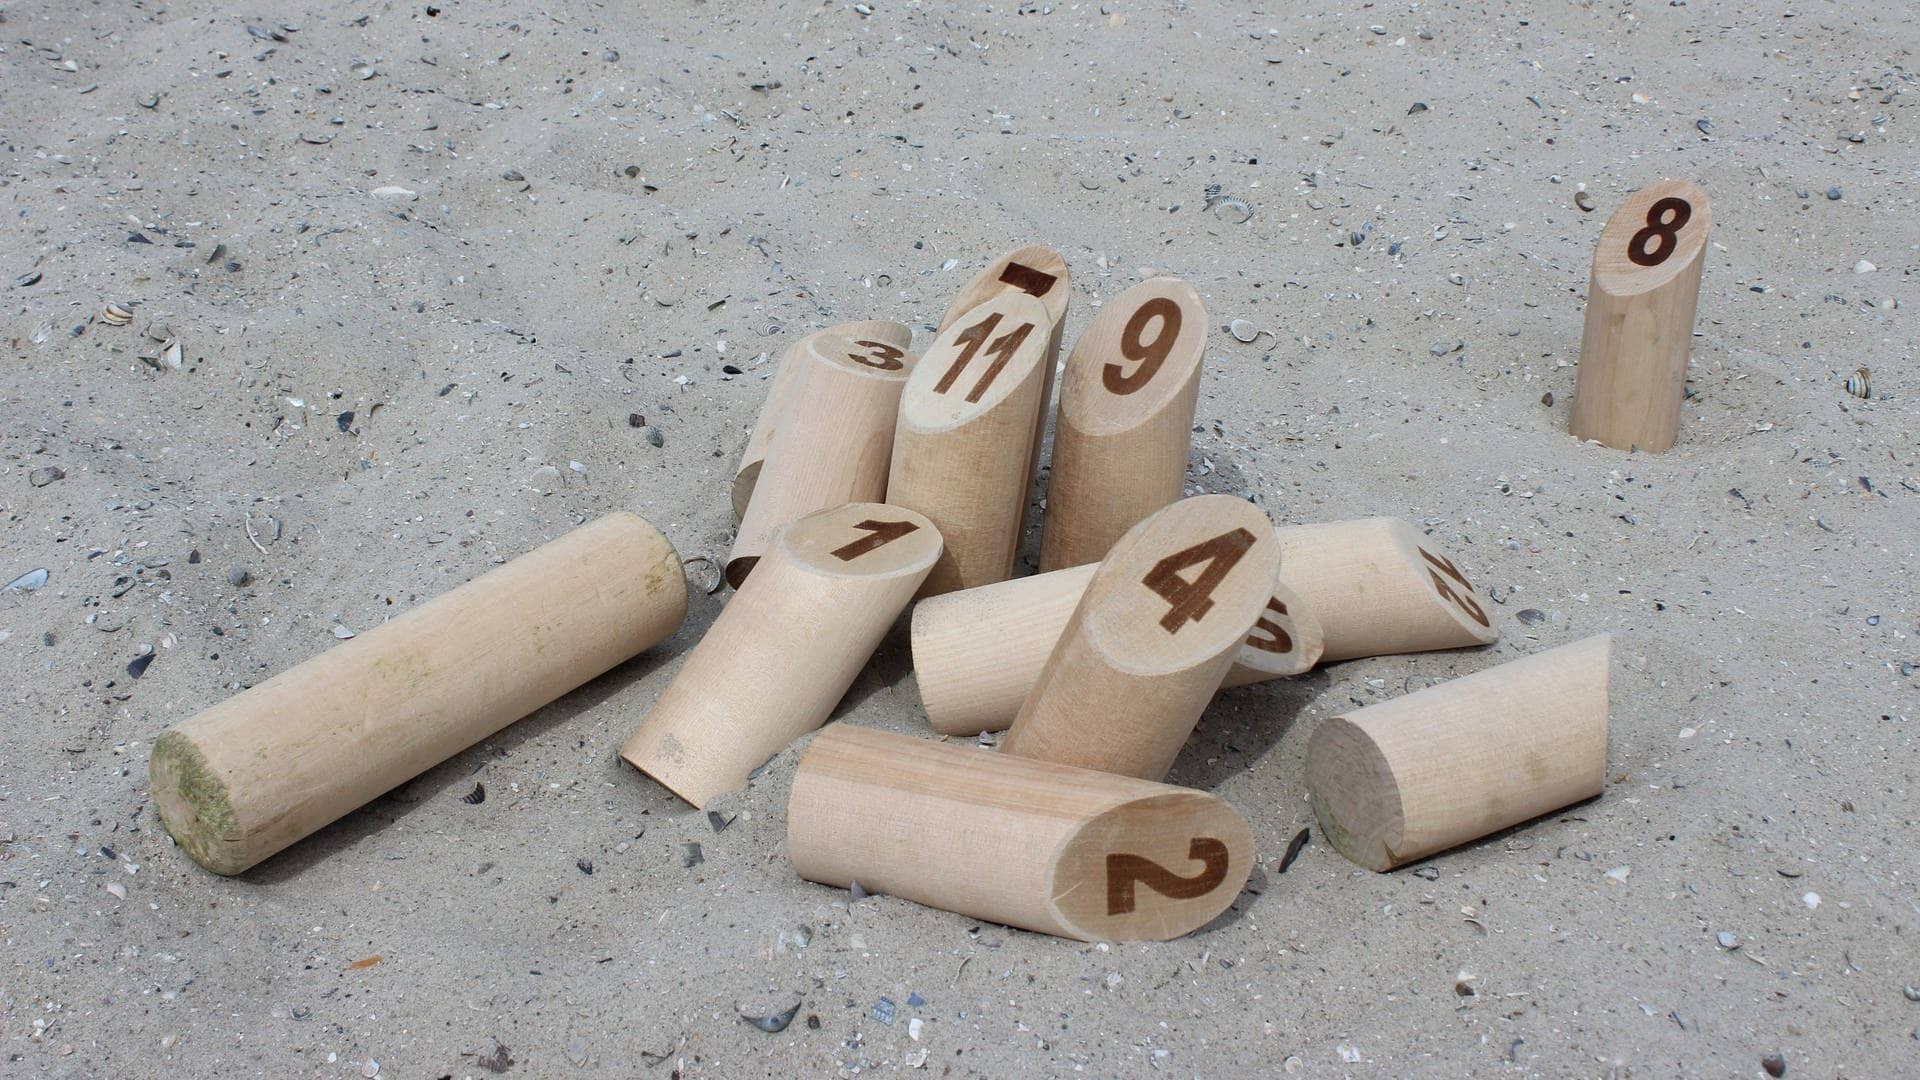 Nummerierte Holzklötze liegen im Sand